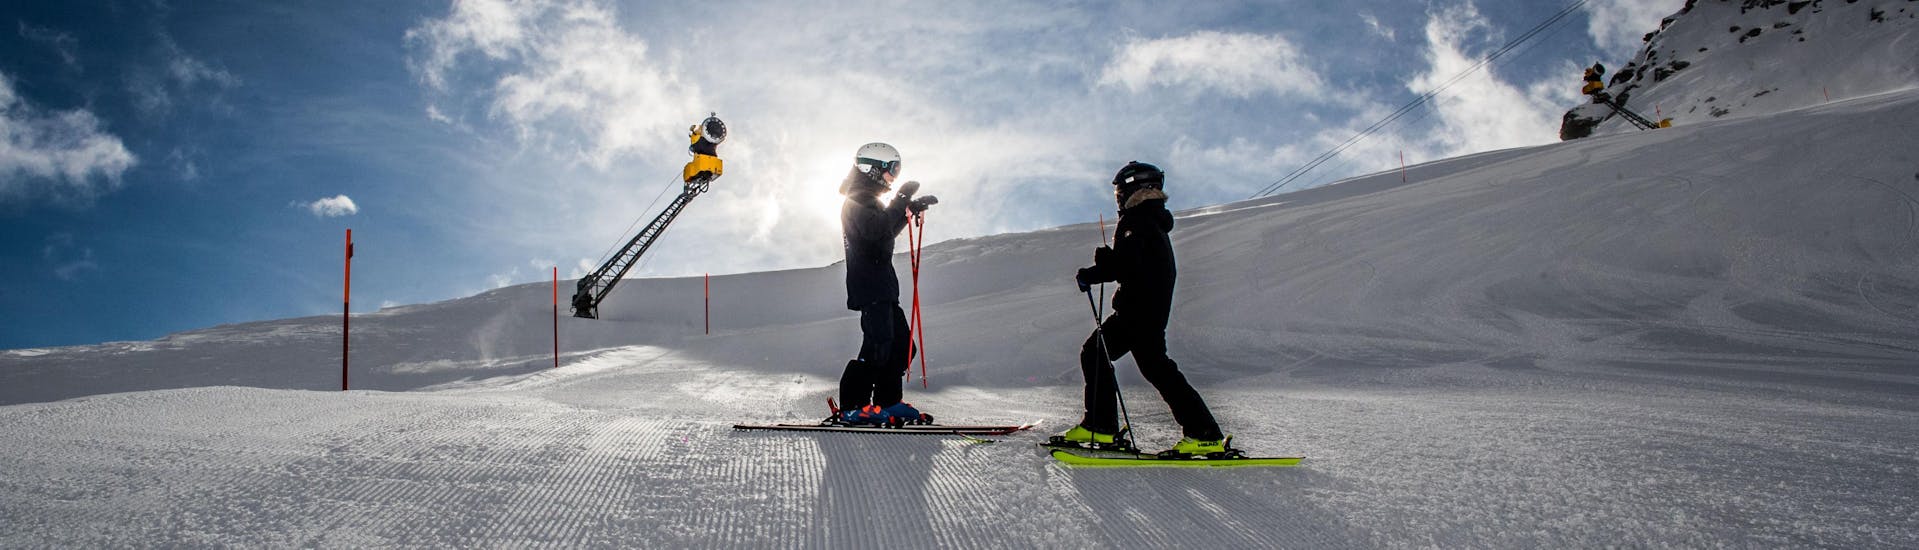 Bei der Skischule Zenit in Saas-Fee werden private Kinder-Skikurse für Experten angeboten.